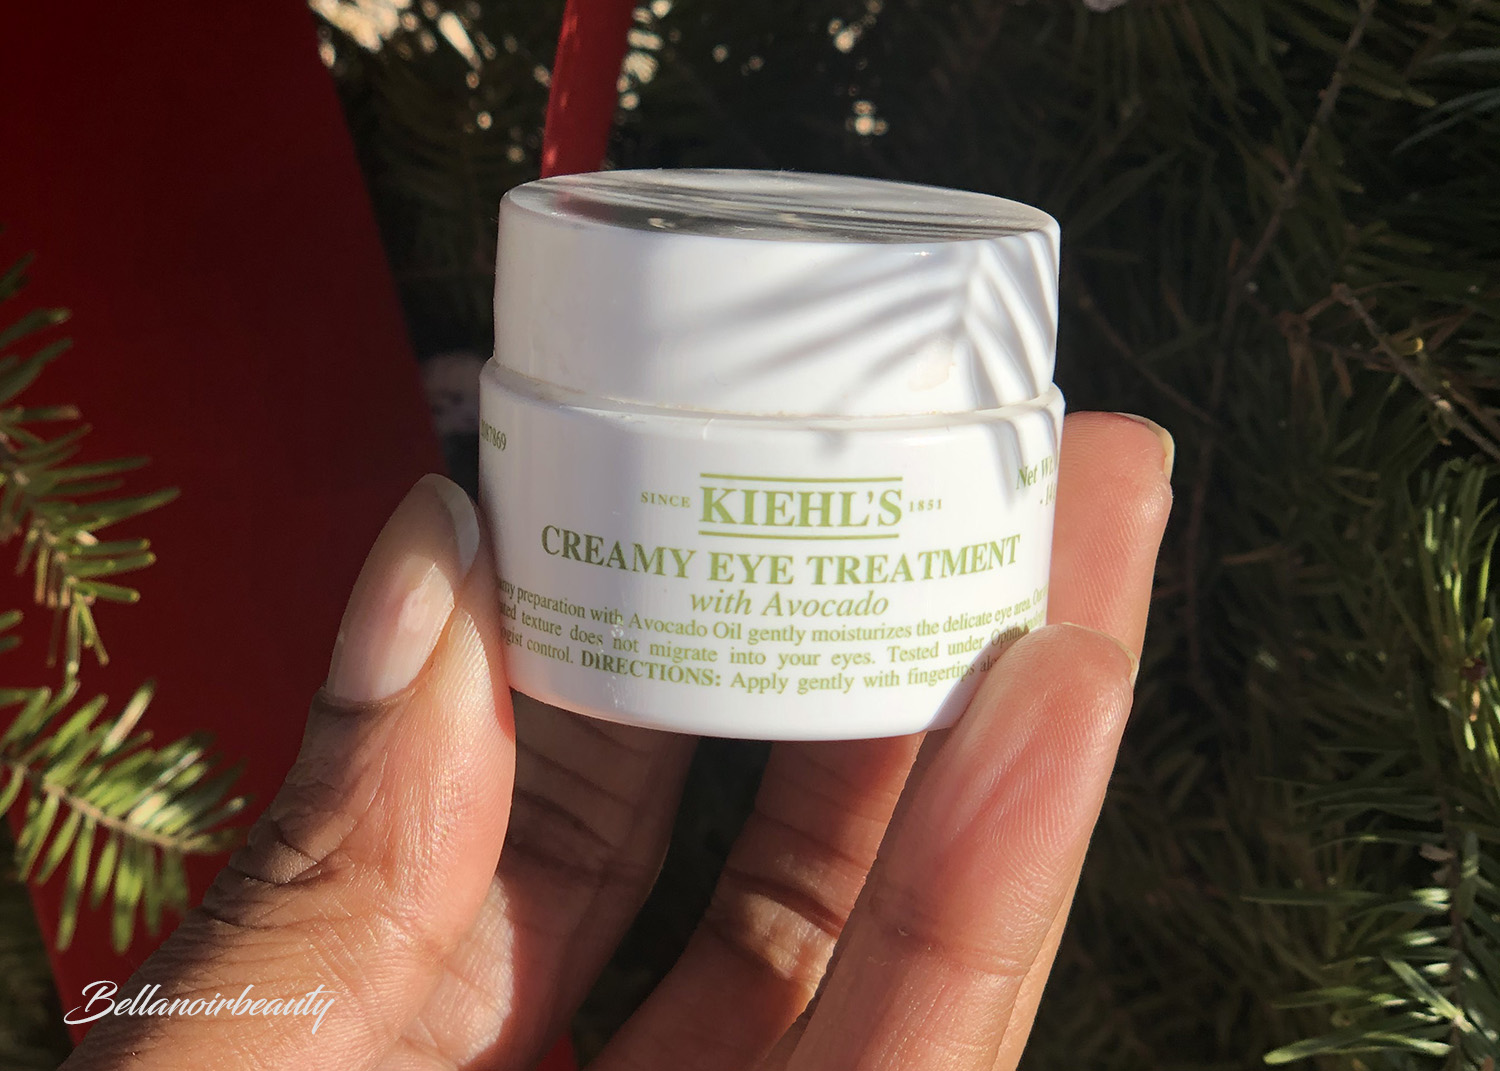 Kiehl's' Creamy Eye Treatment with Avocado | bellanoirbeauty.com